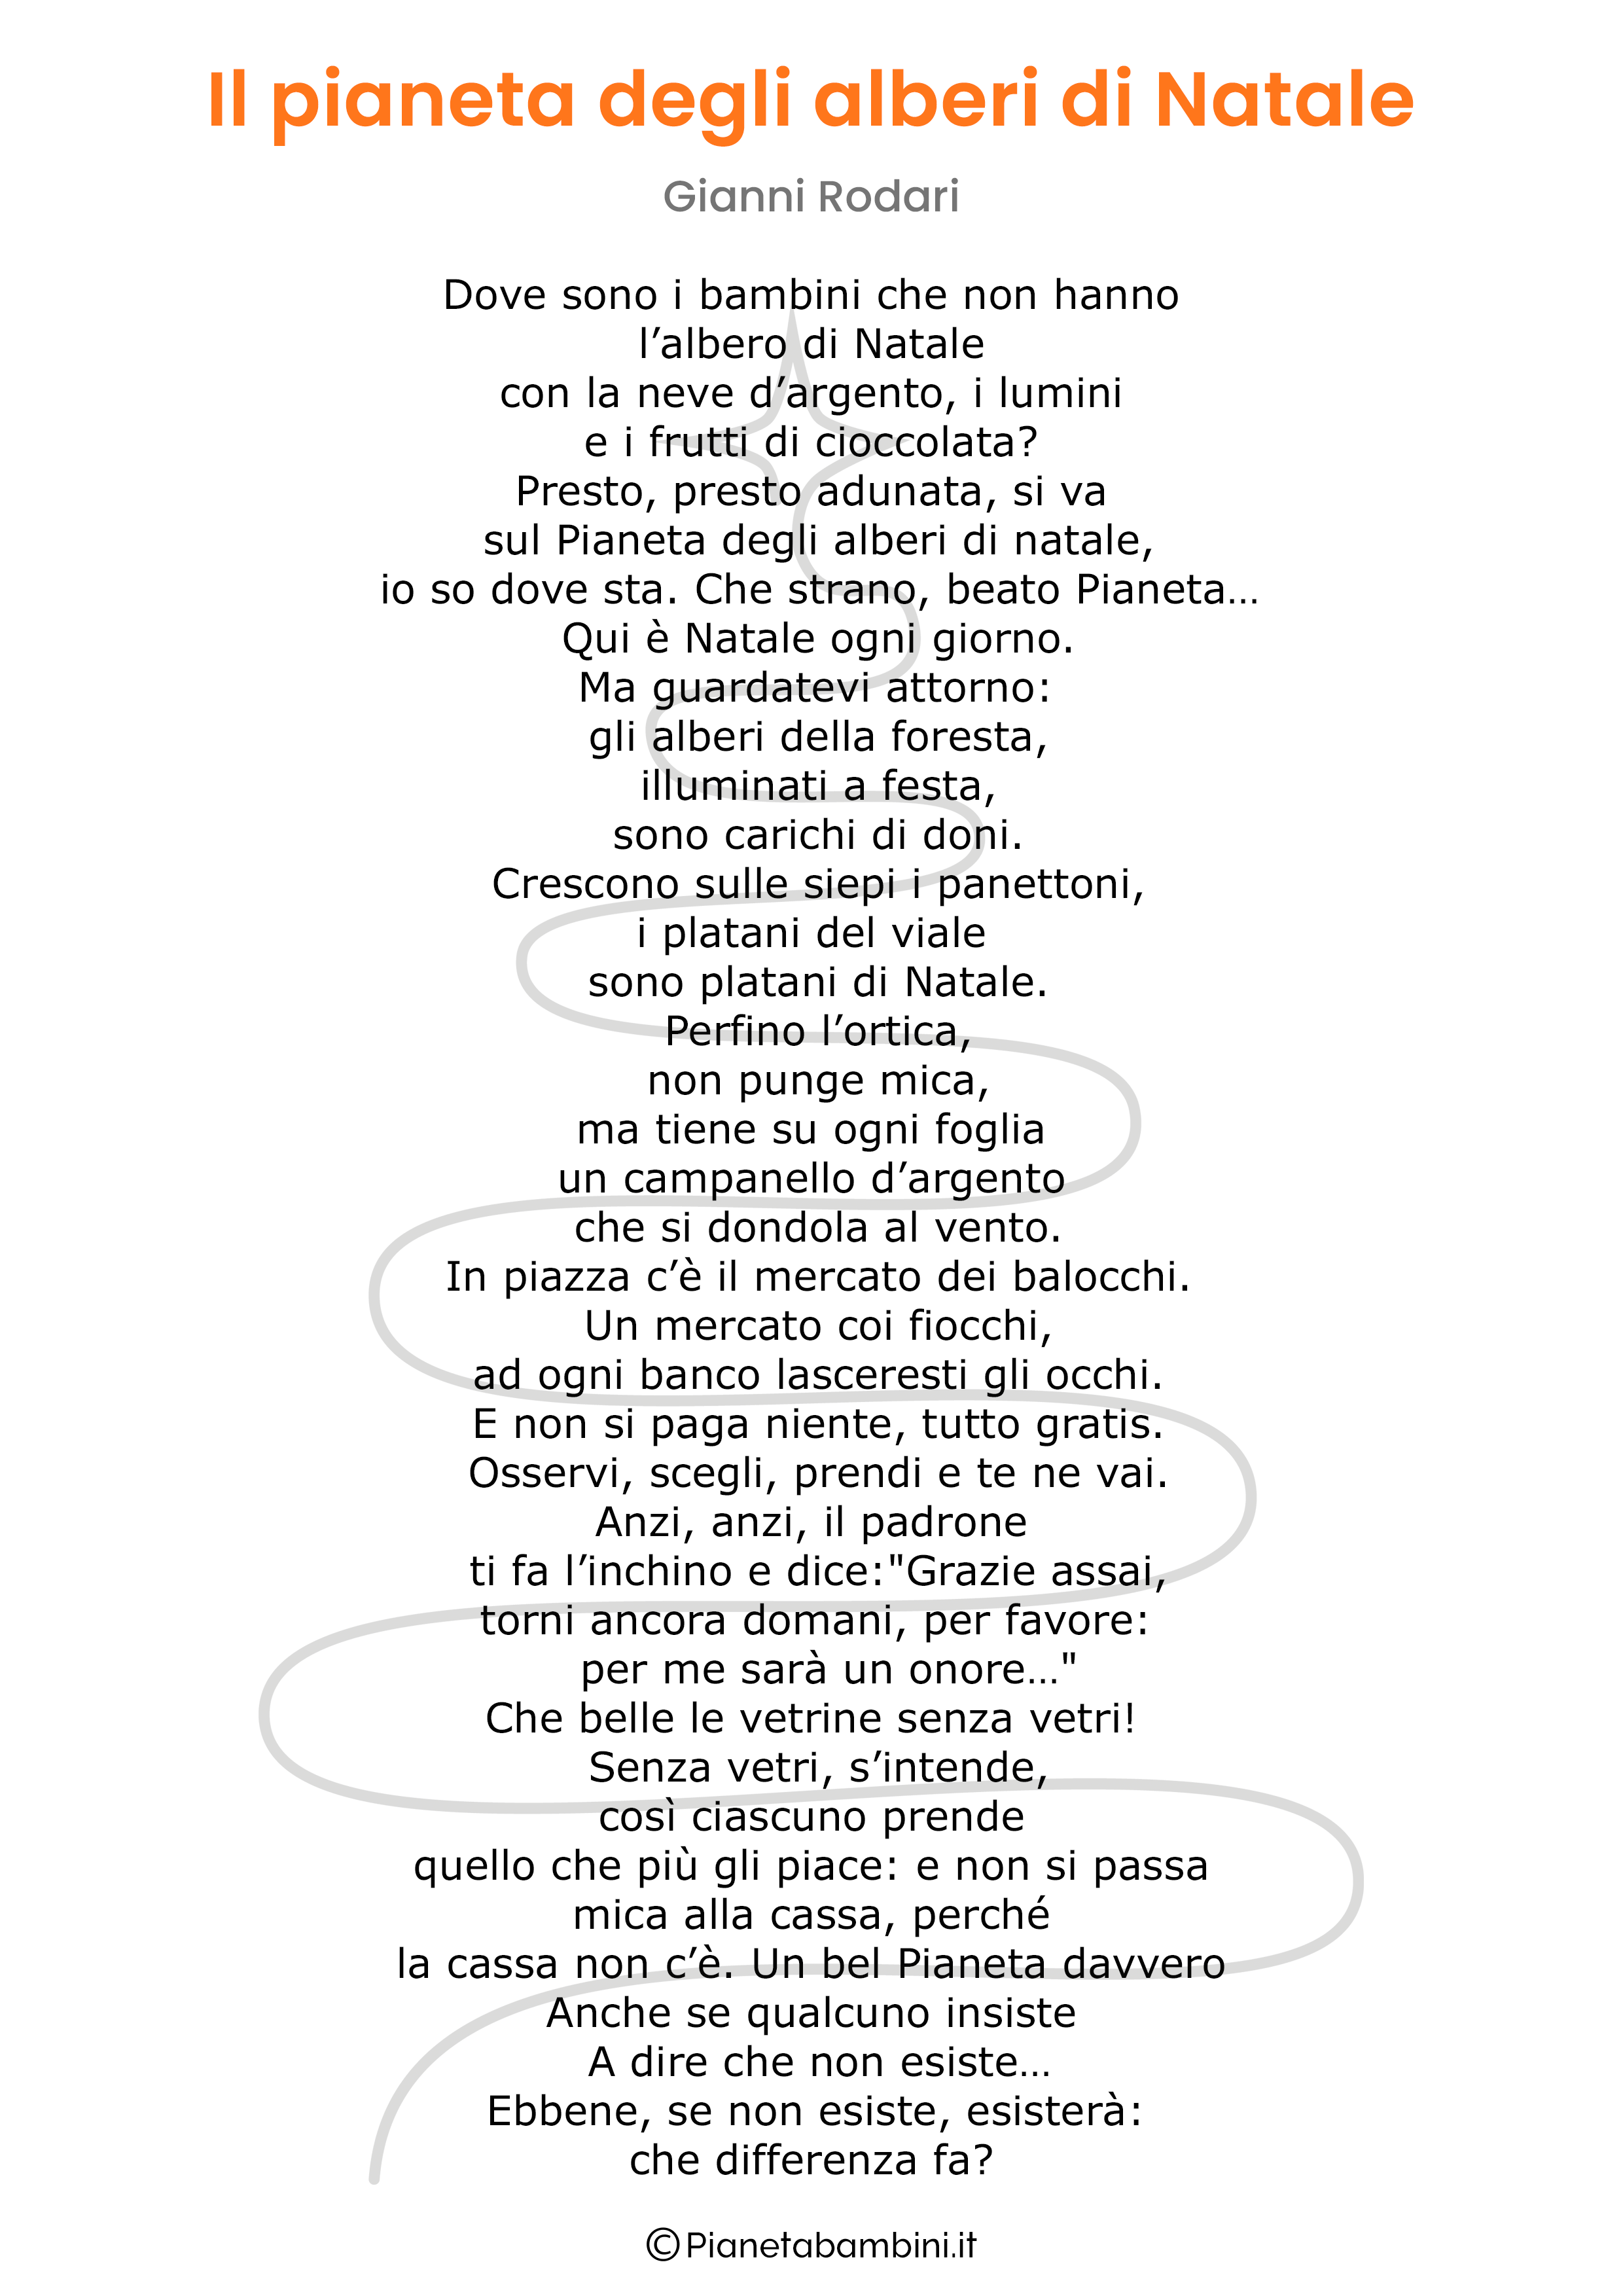 Poesia Pianeta Degli Alberi Di Natale di Gianni Rodari da stampare